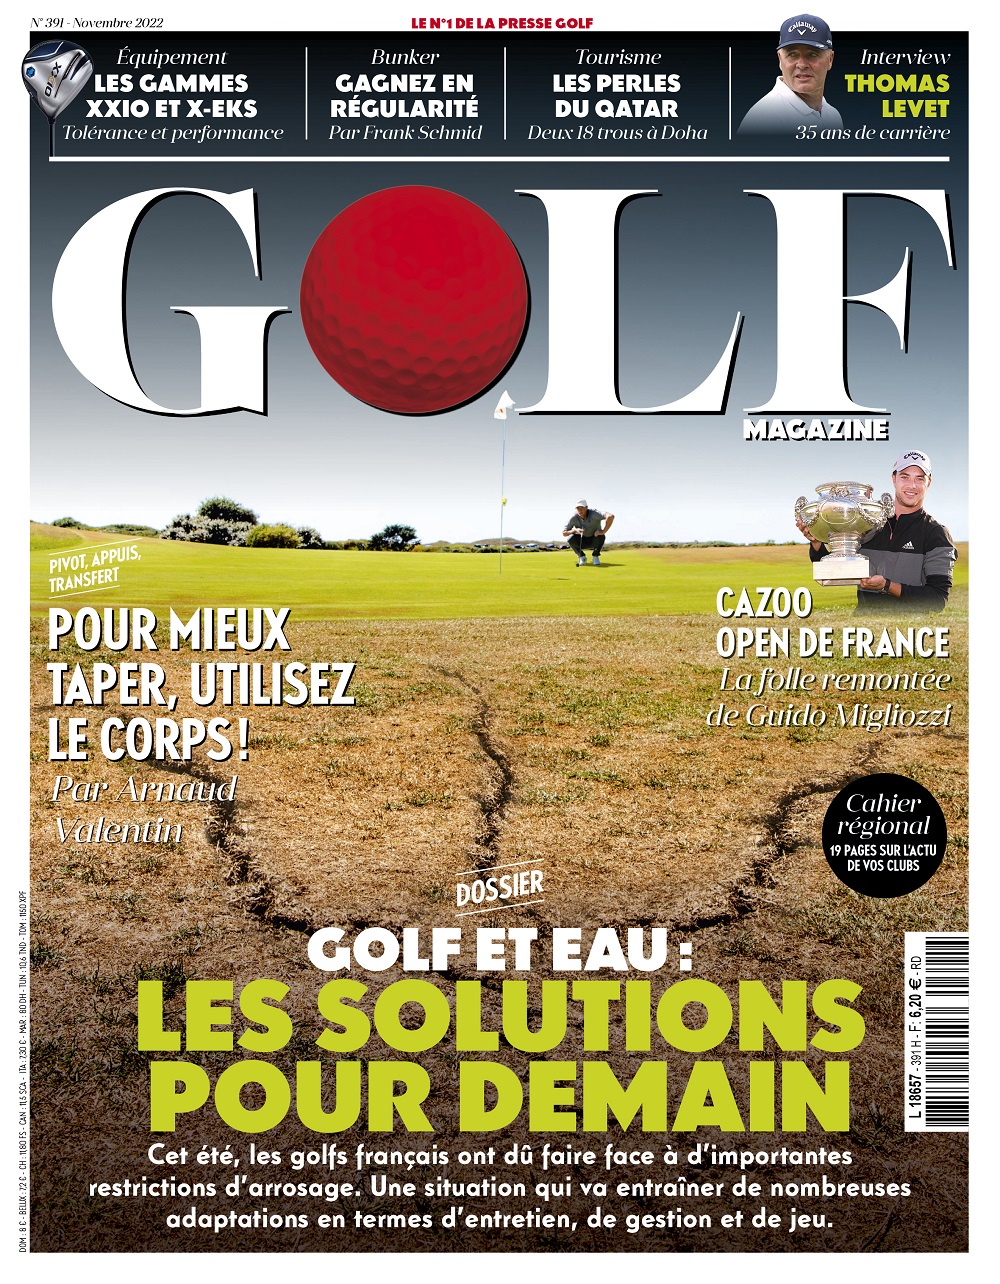 Le Golf Magazine n°391 est en kiosque !